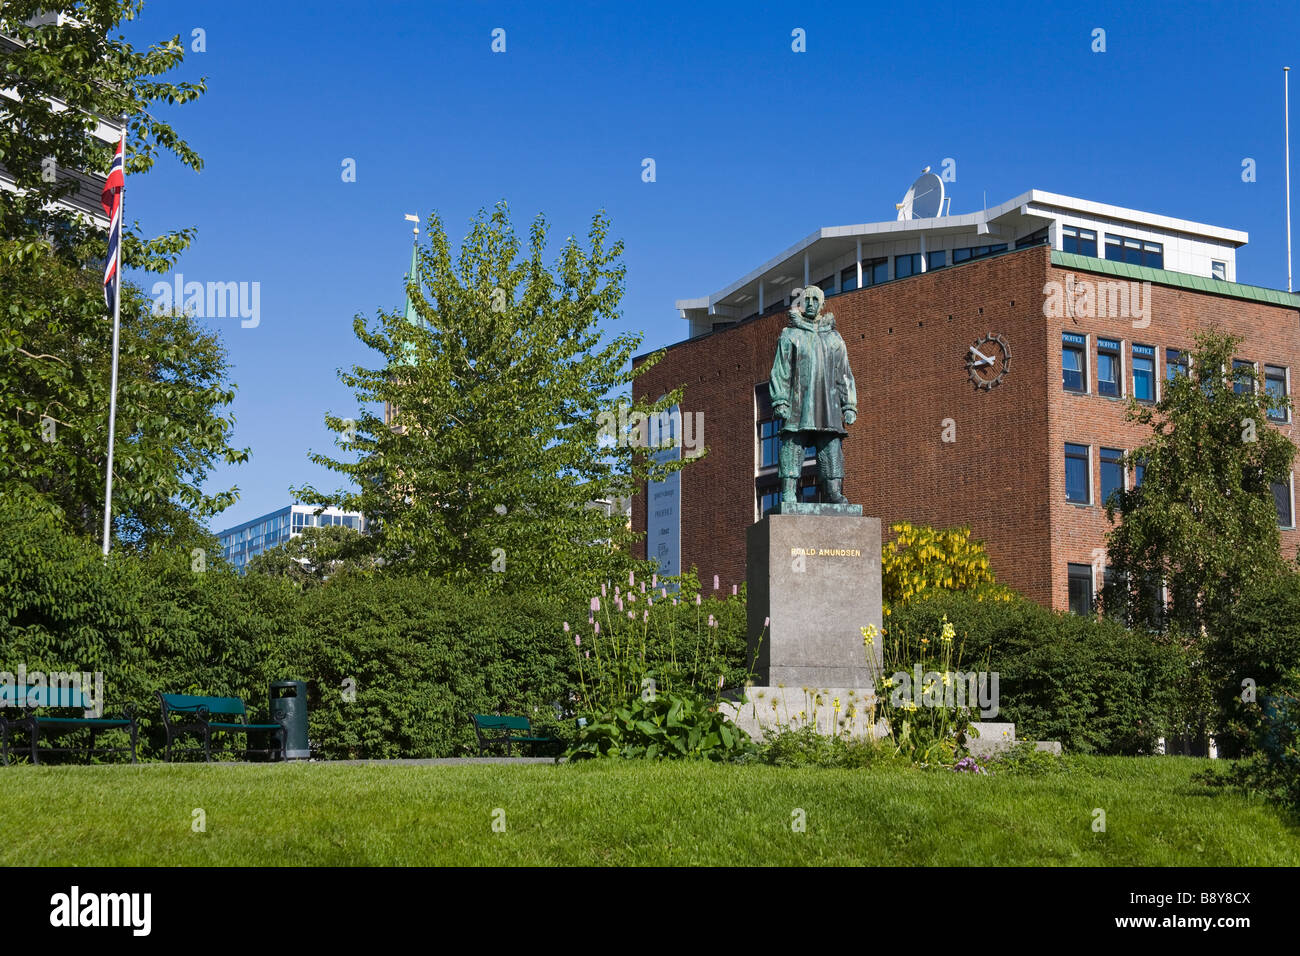 Statua di Roald Amundsen in un parco, Tromso, Toms County, Nord-Norge, Norvegia Foto Stock